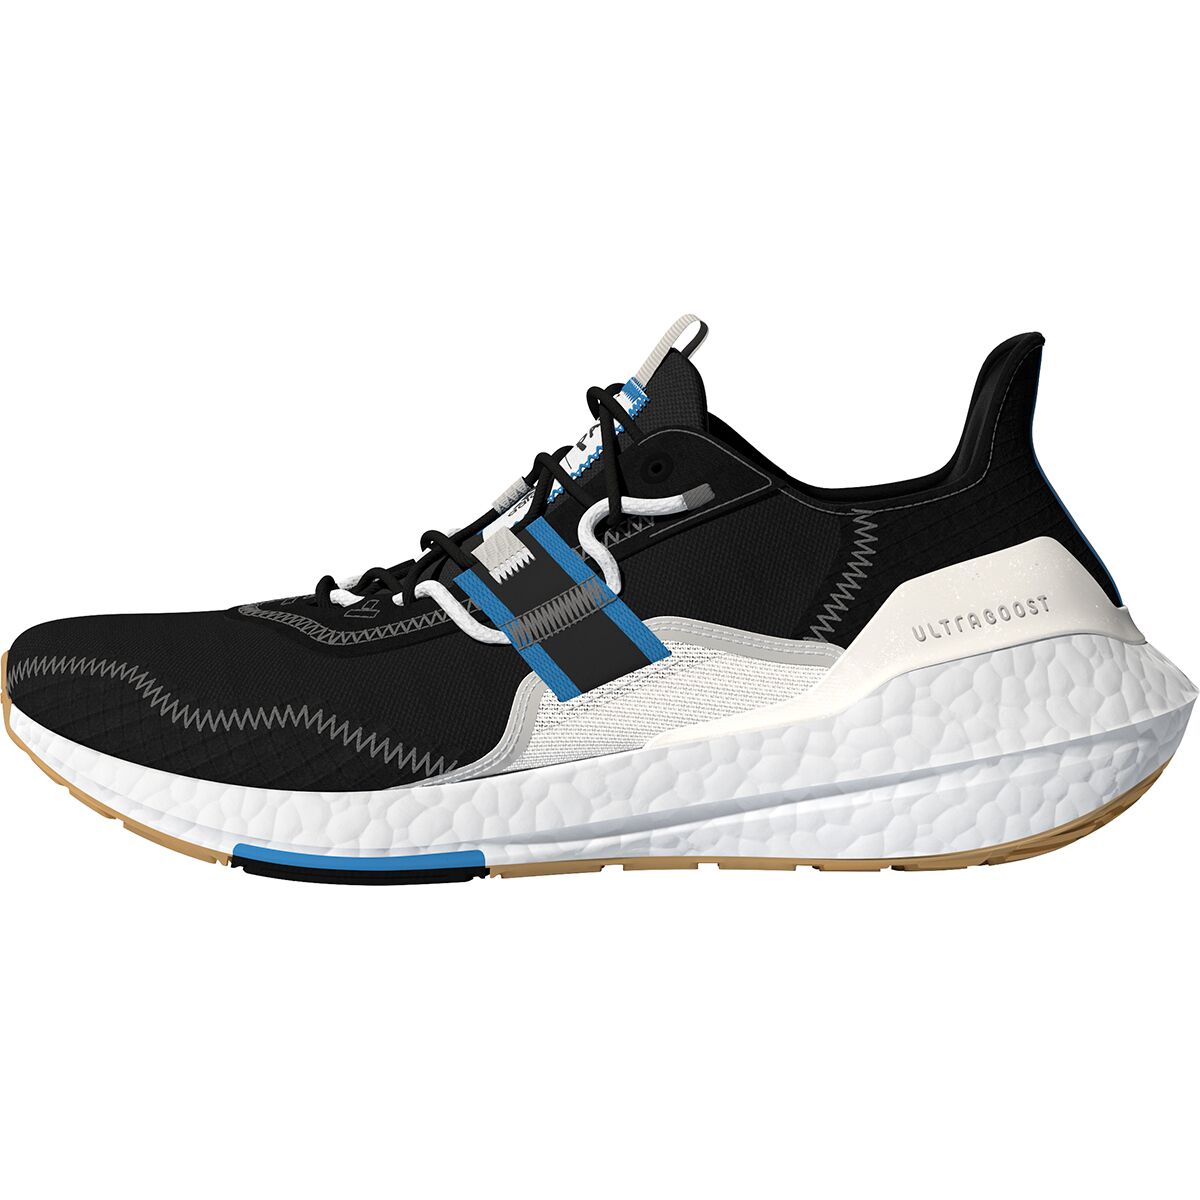 Adidas Ultraboost 22 x Parley Running Shoe - Women's